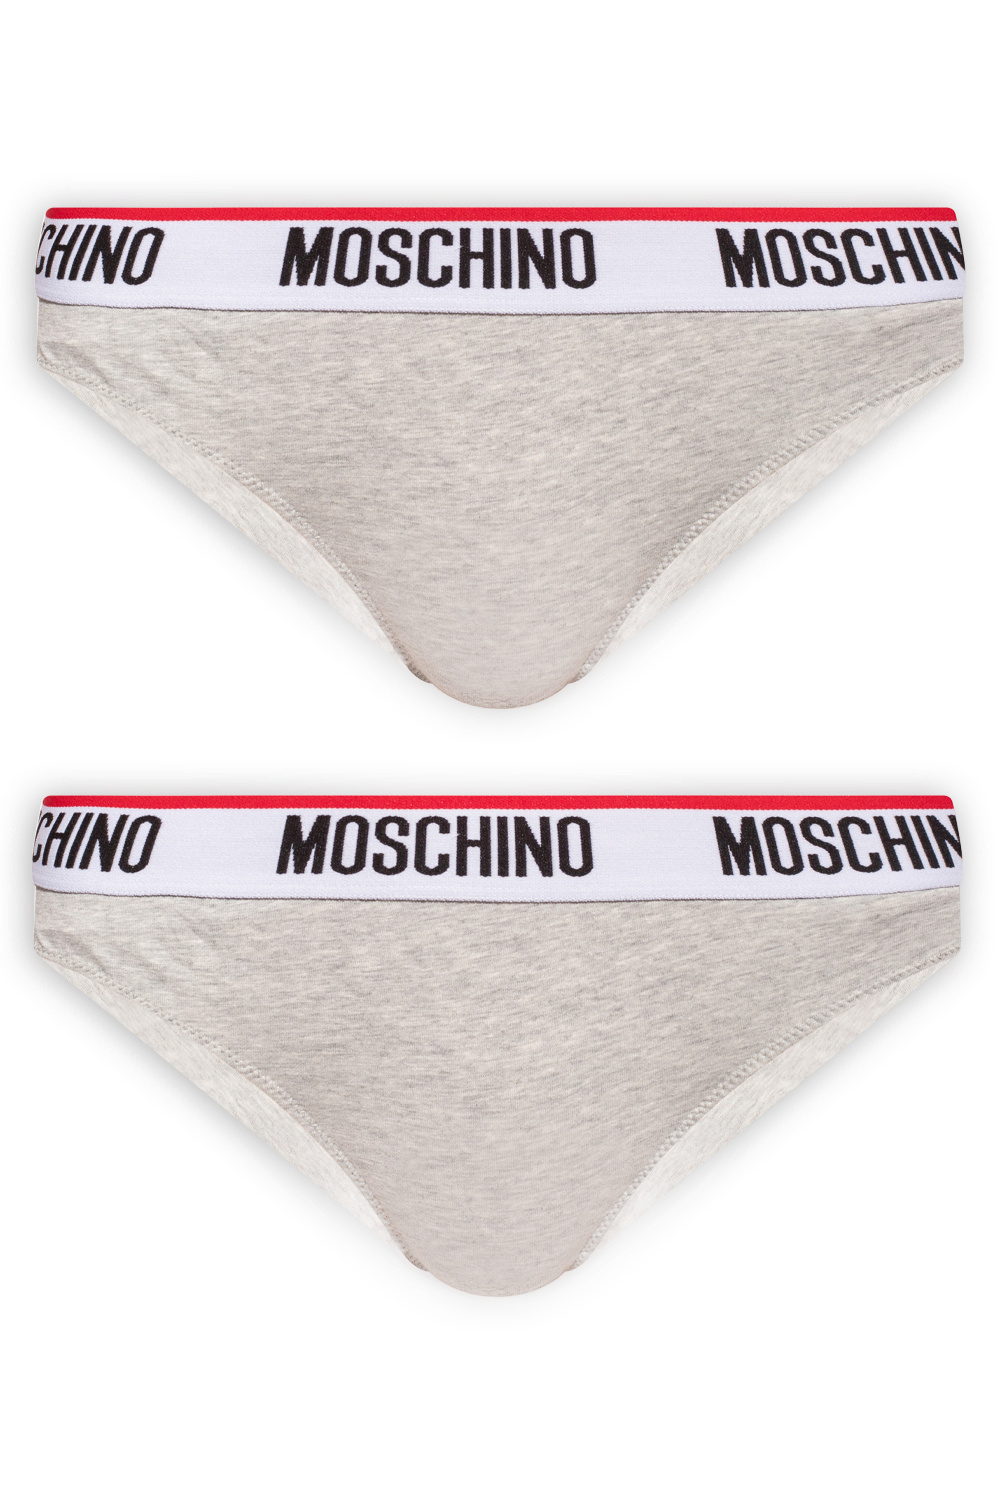 White Branded thong 2-pack Moschino - Vitkac Italy